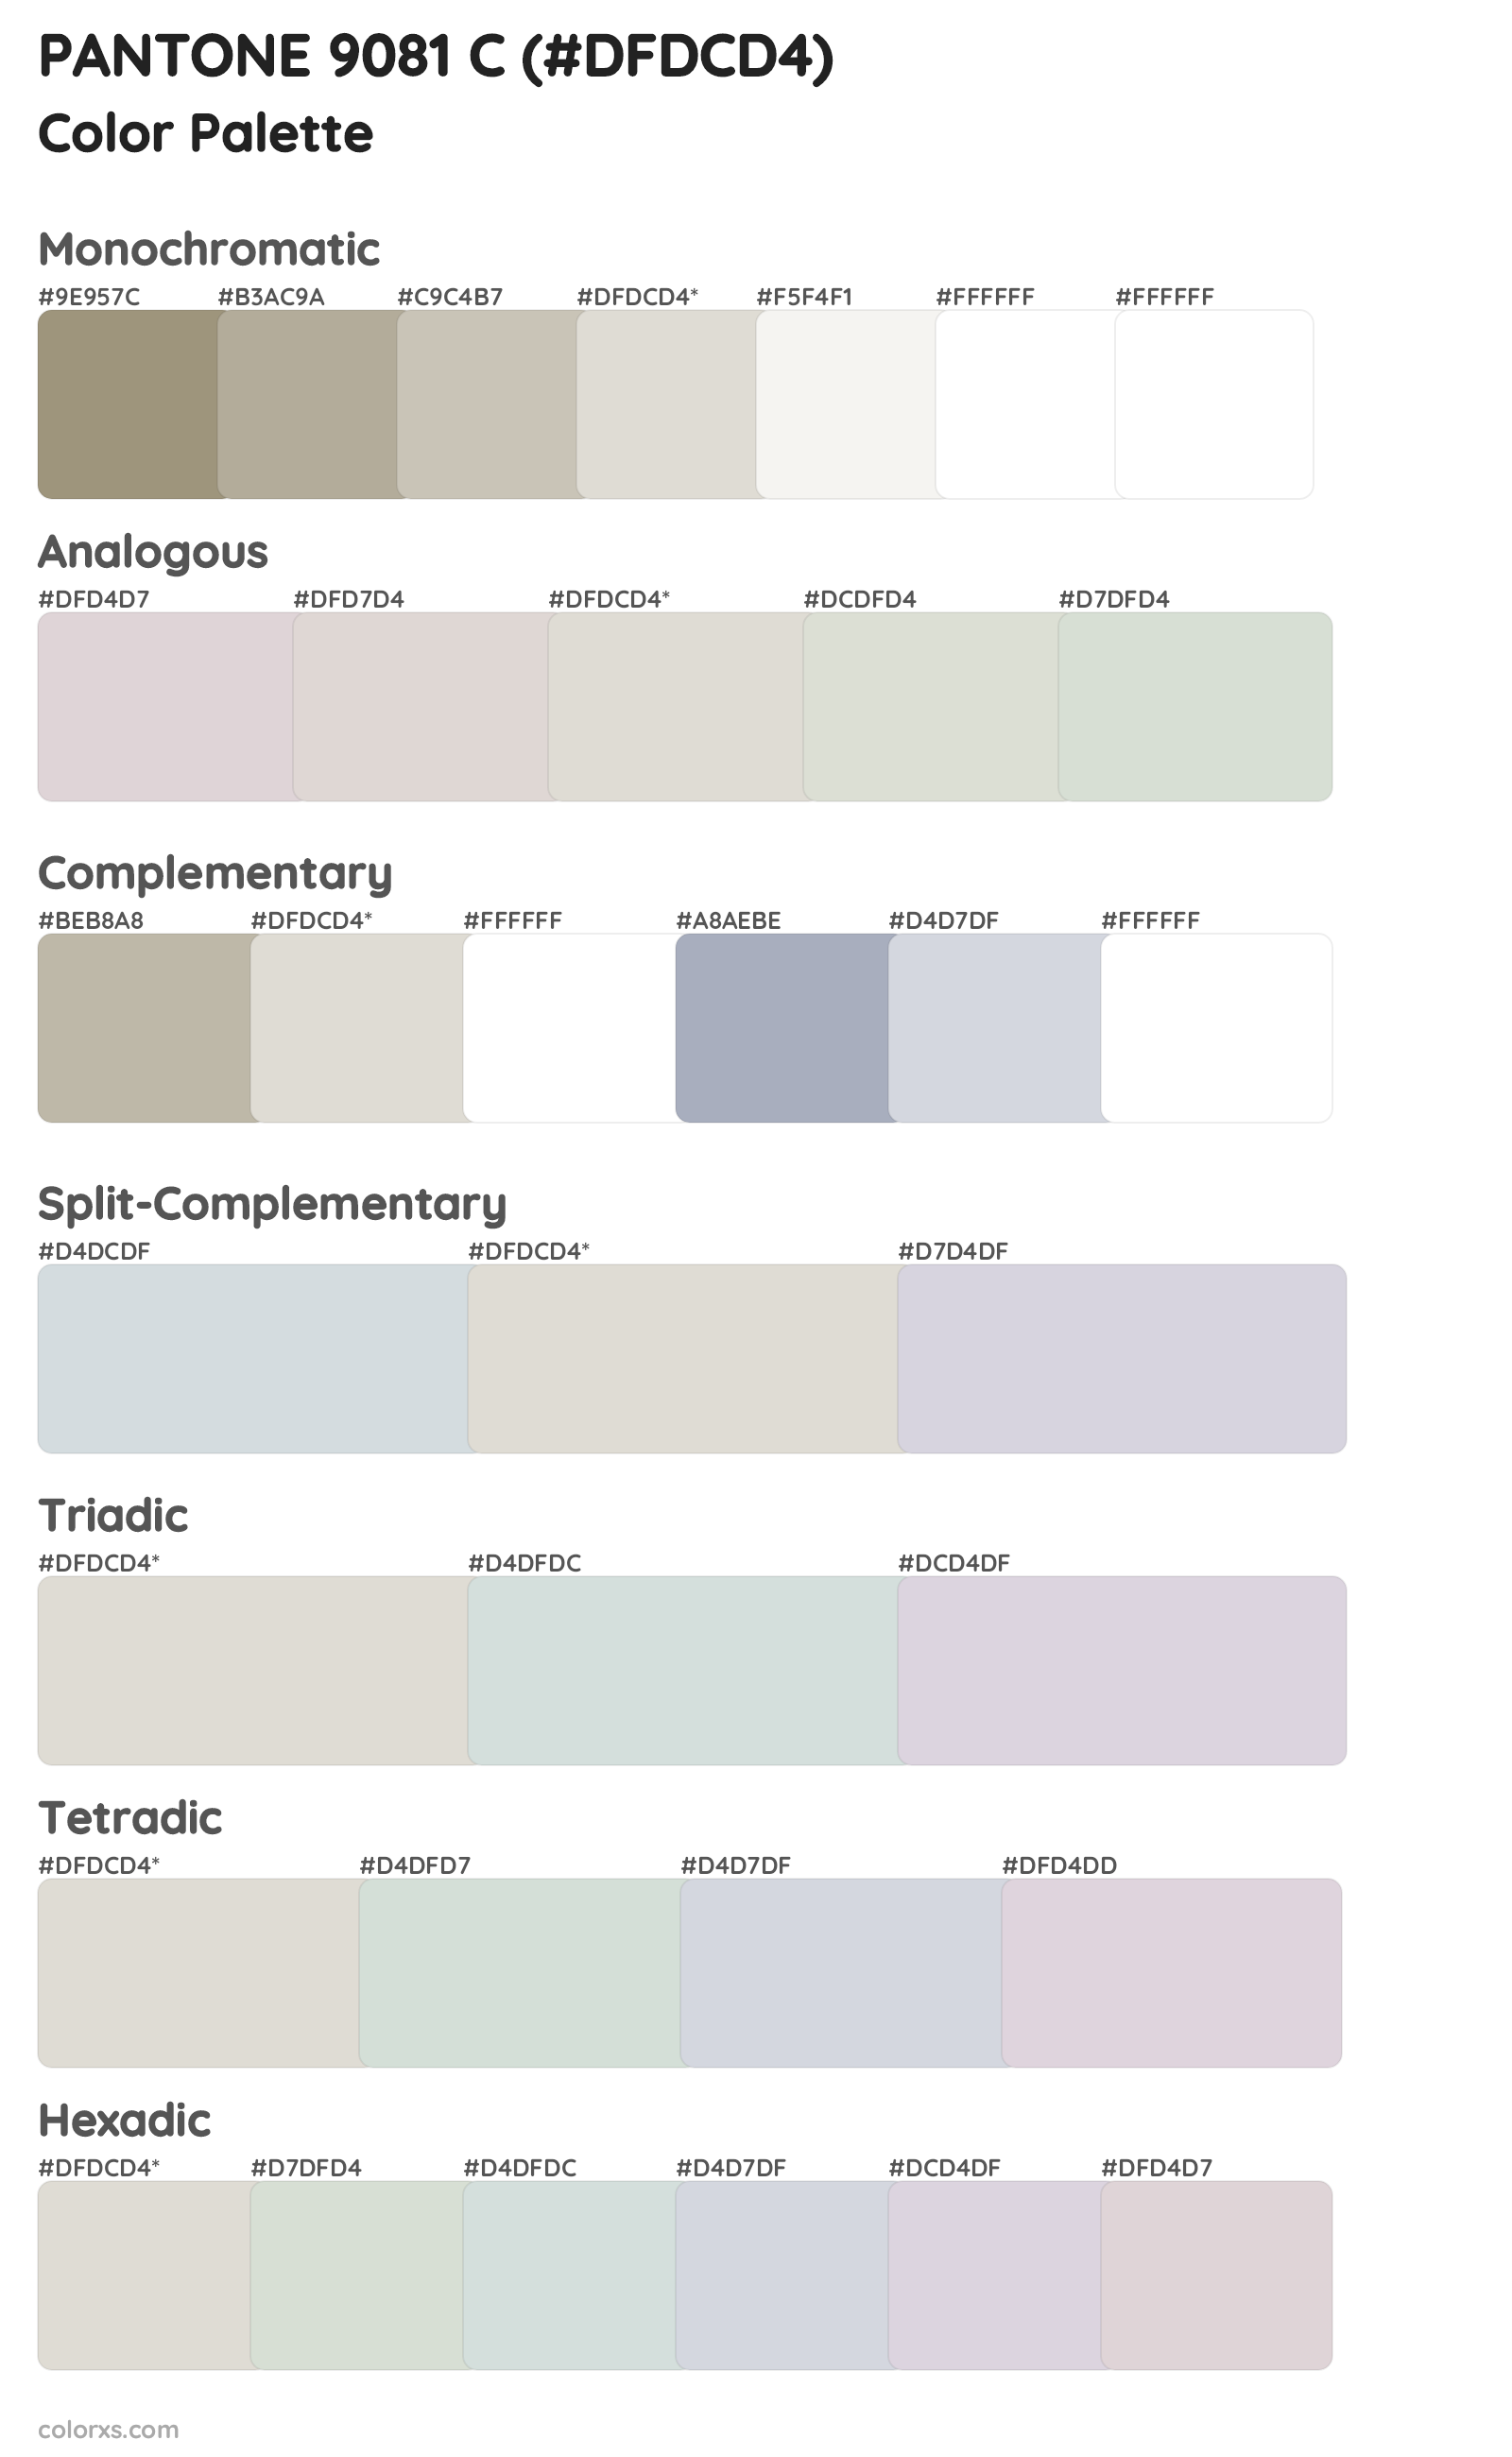 PANTONE 9081 C Color Scheme Palettes